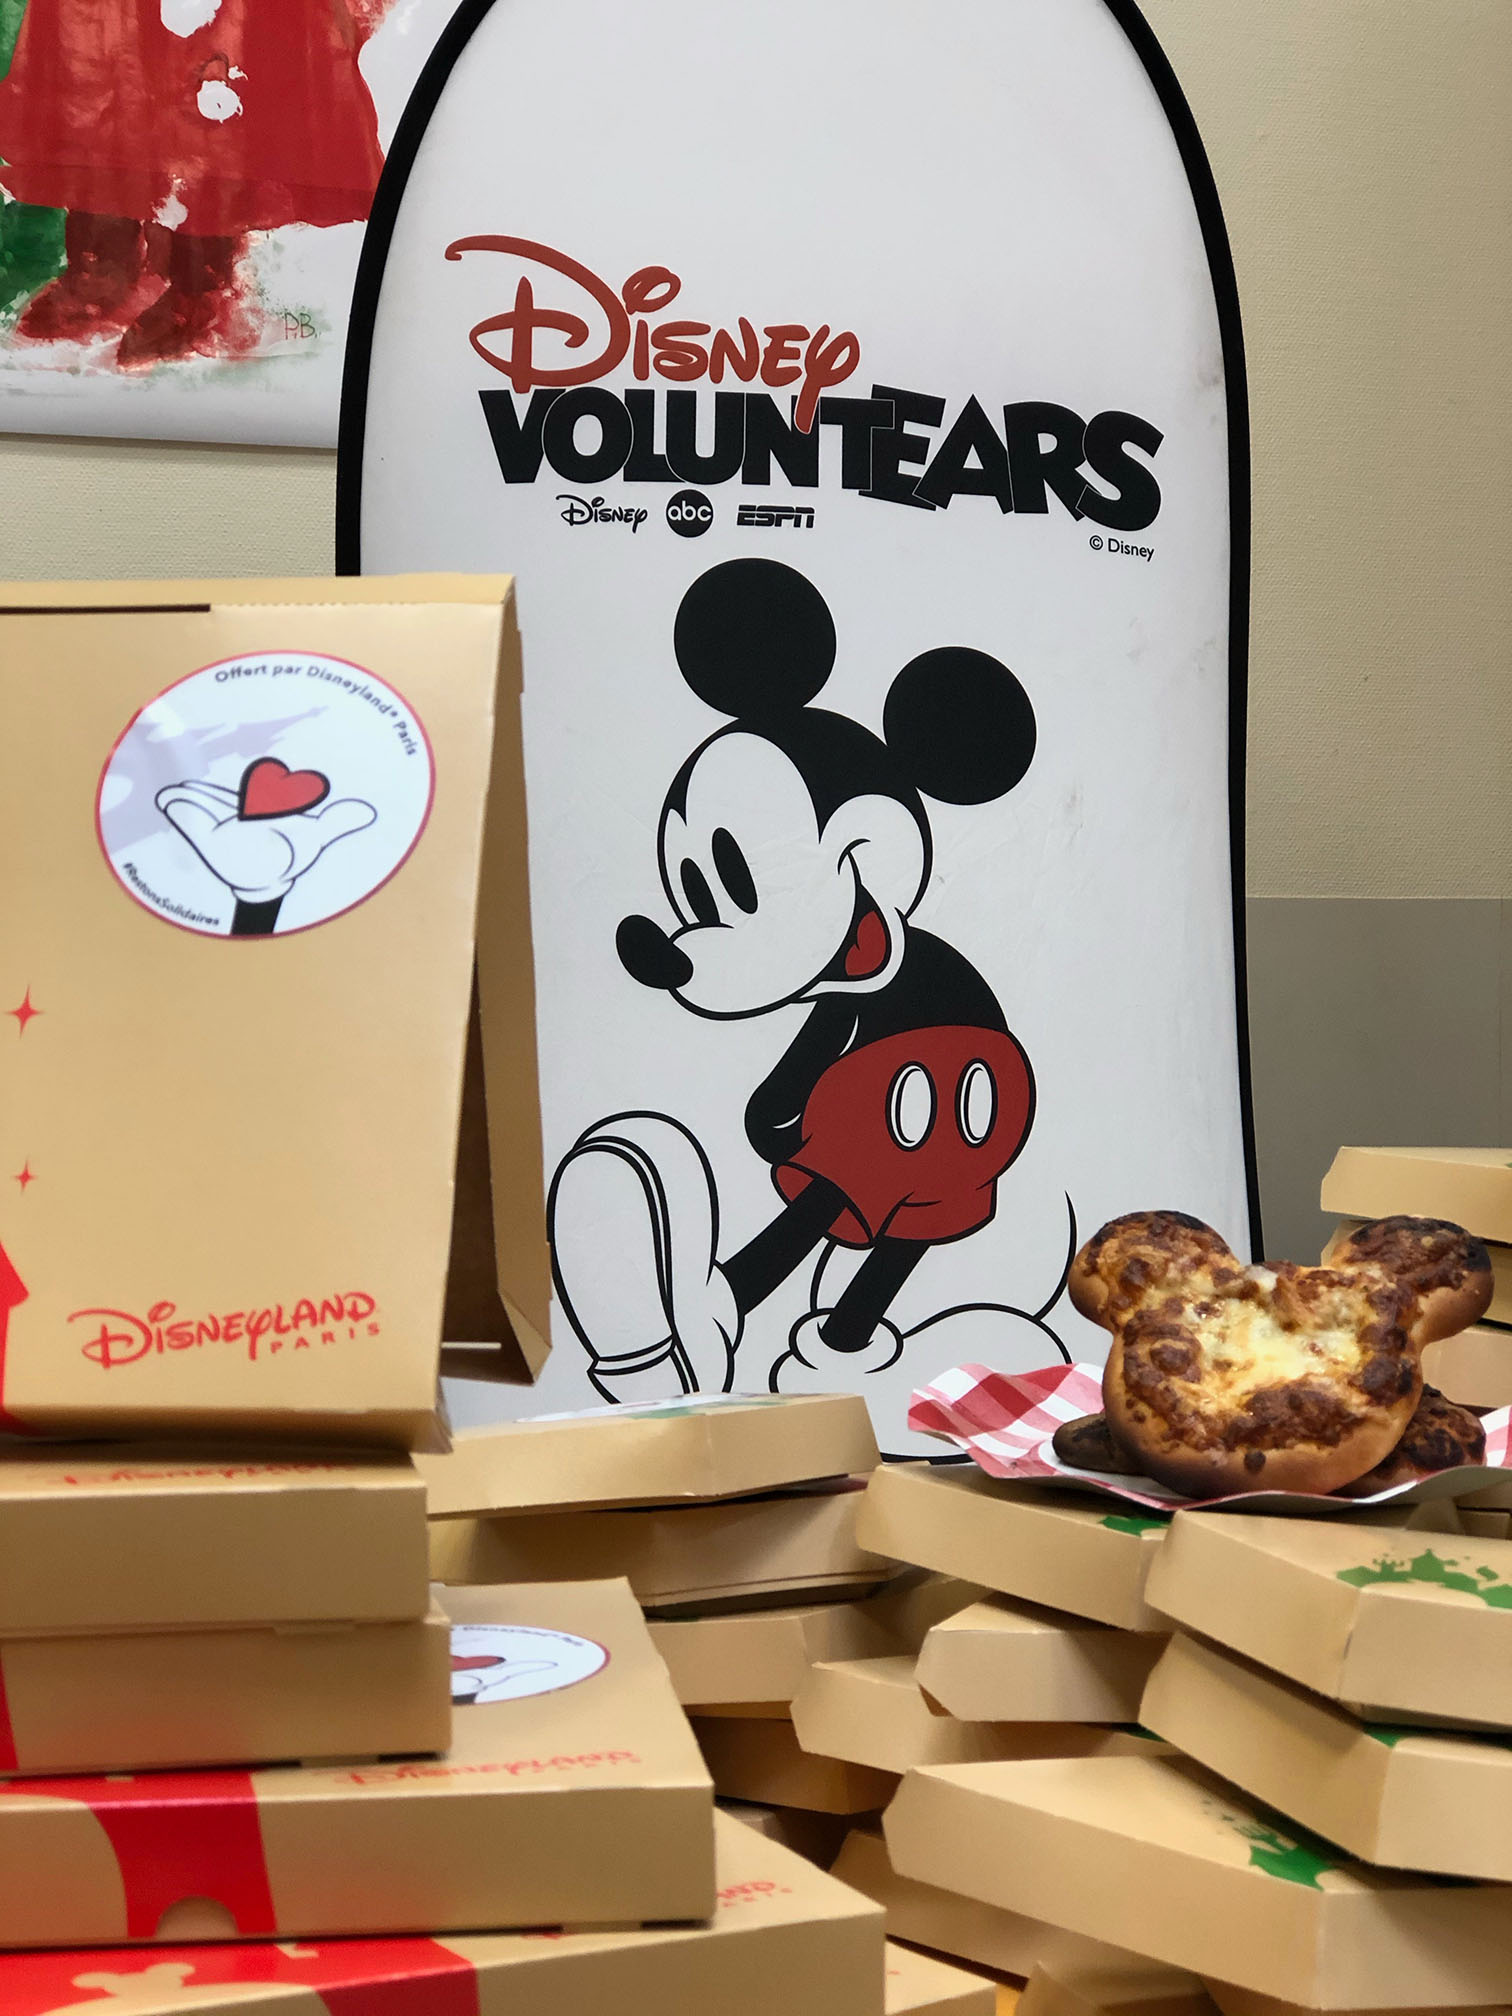 Les Disney VoluntEARS de Disneyland Paris poursuivent leur aide aux personnes dans le besoin, en faisant don de pizzas et de cadeaux de Noël aux familles soutenues par des associations caritatives.